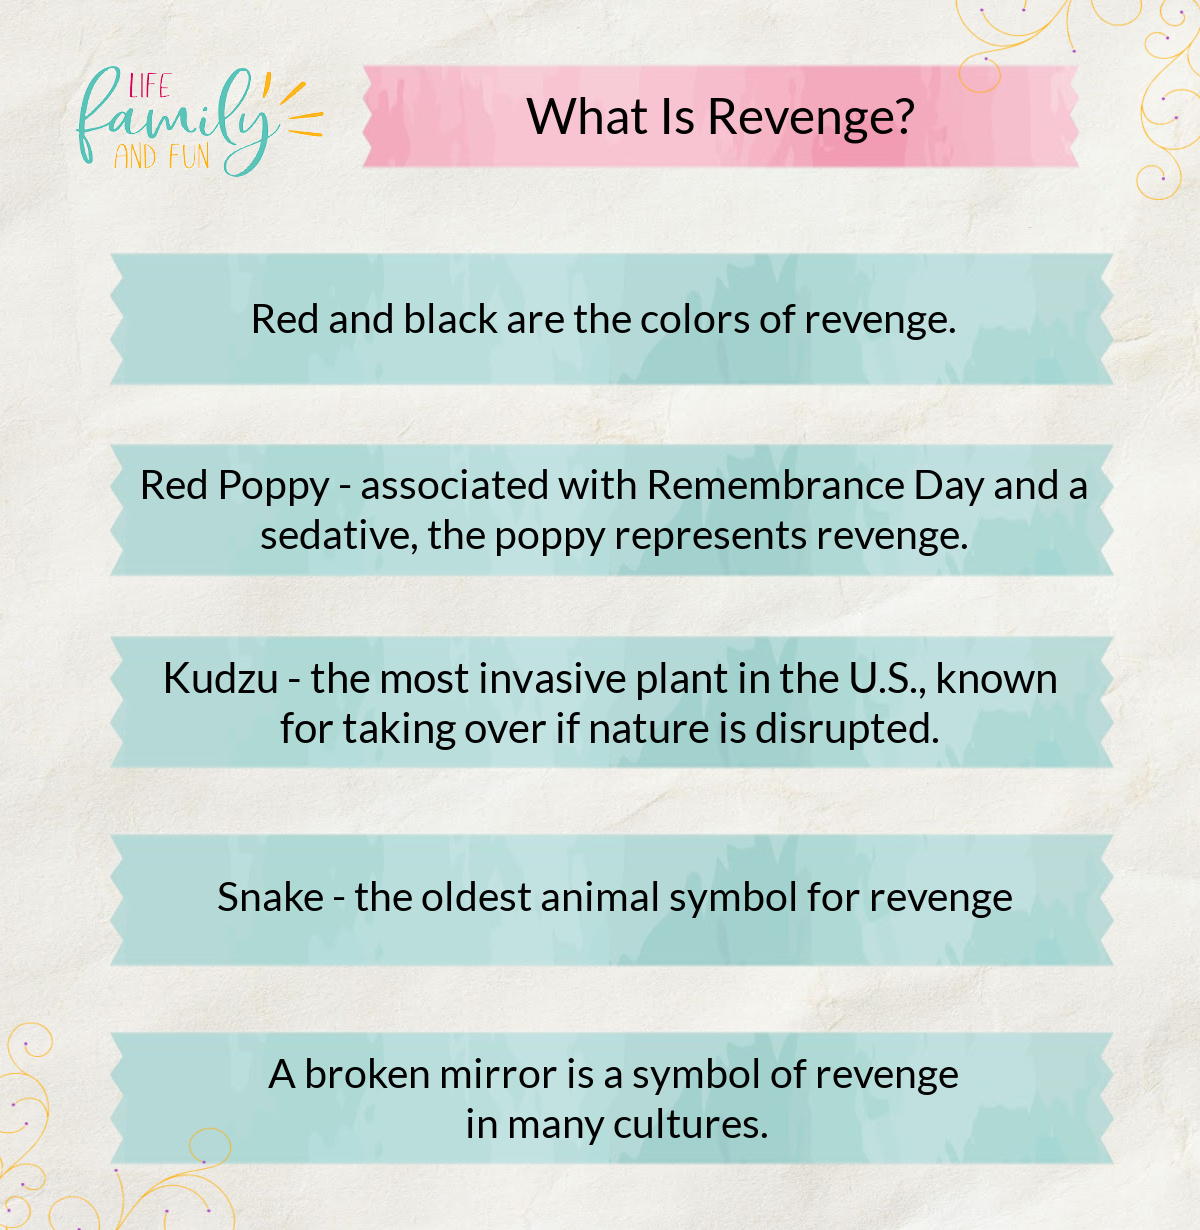 What Is Revenge?